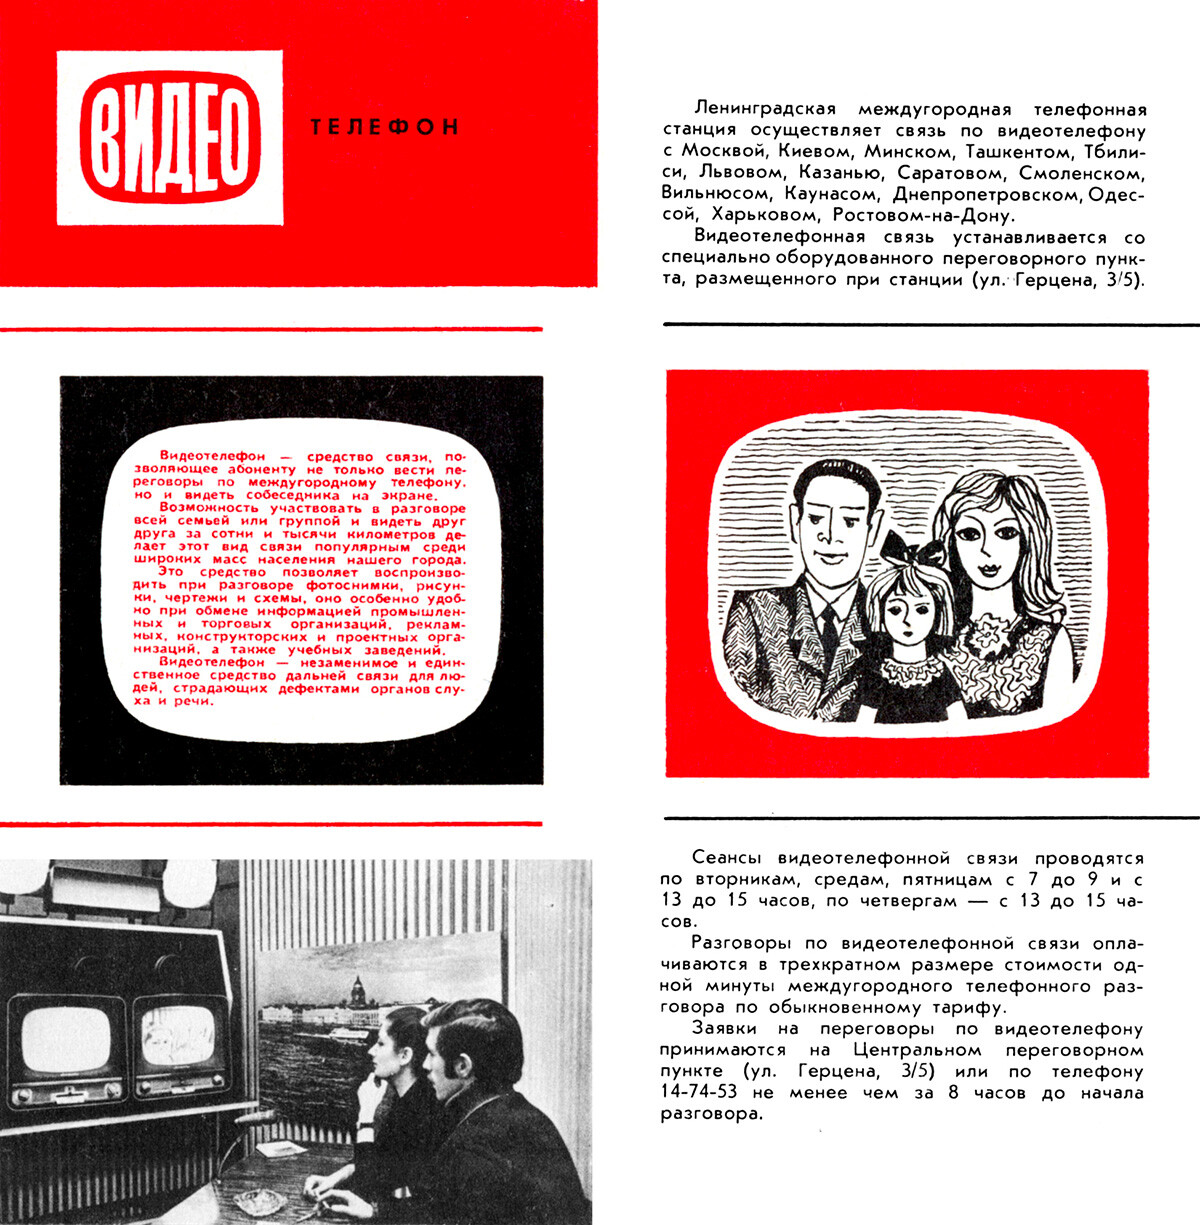 Publicité pour un visiophone, 1971